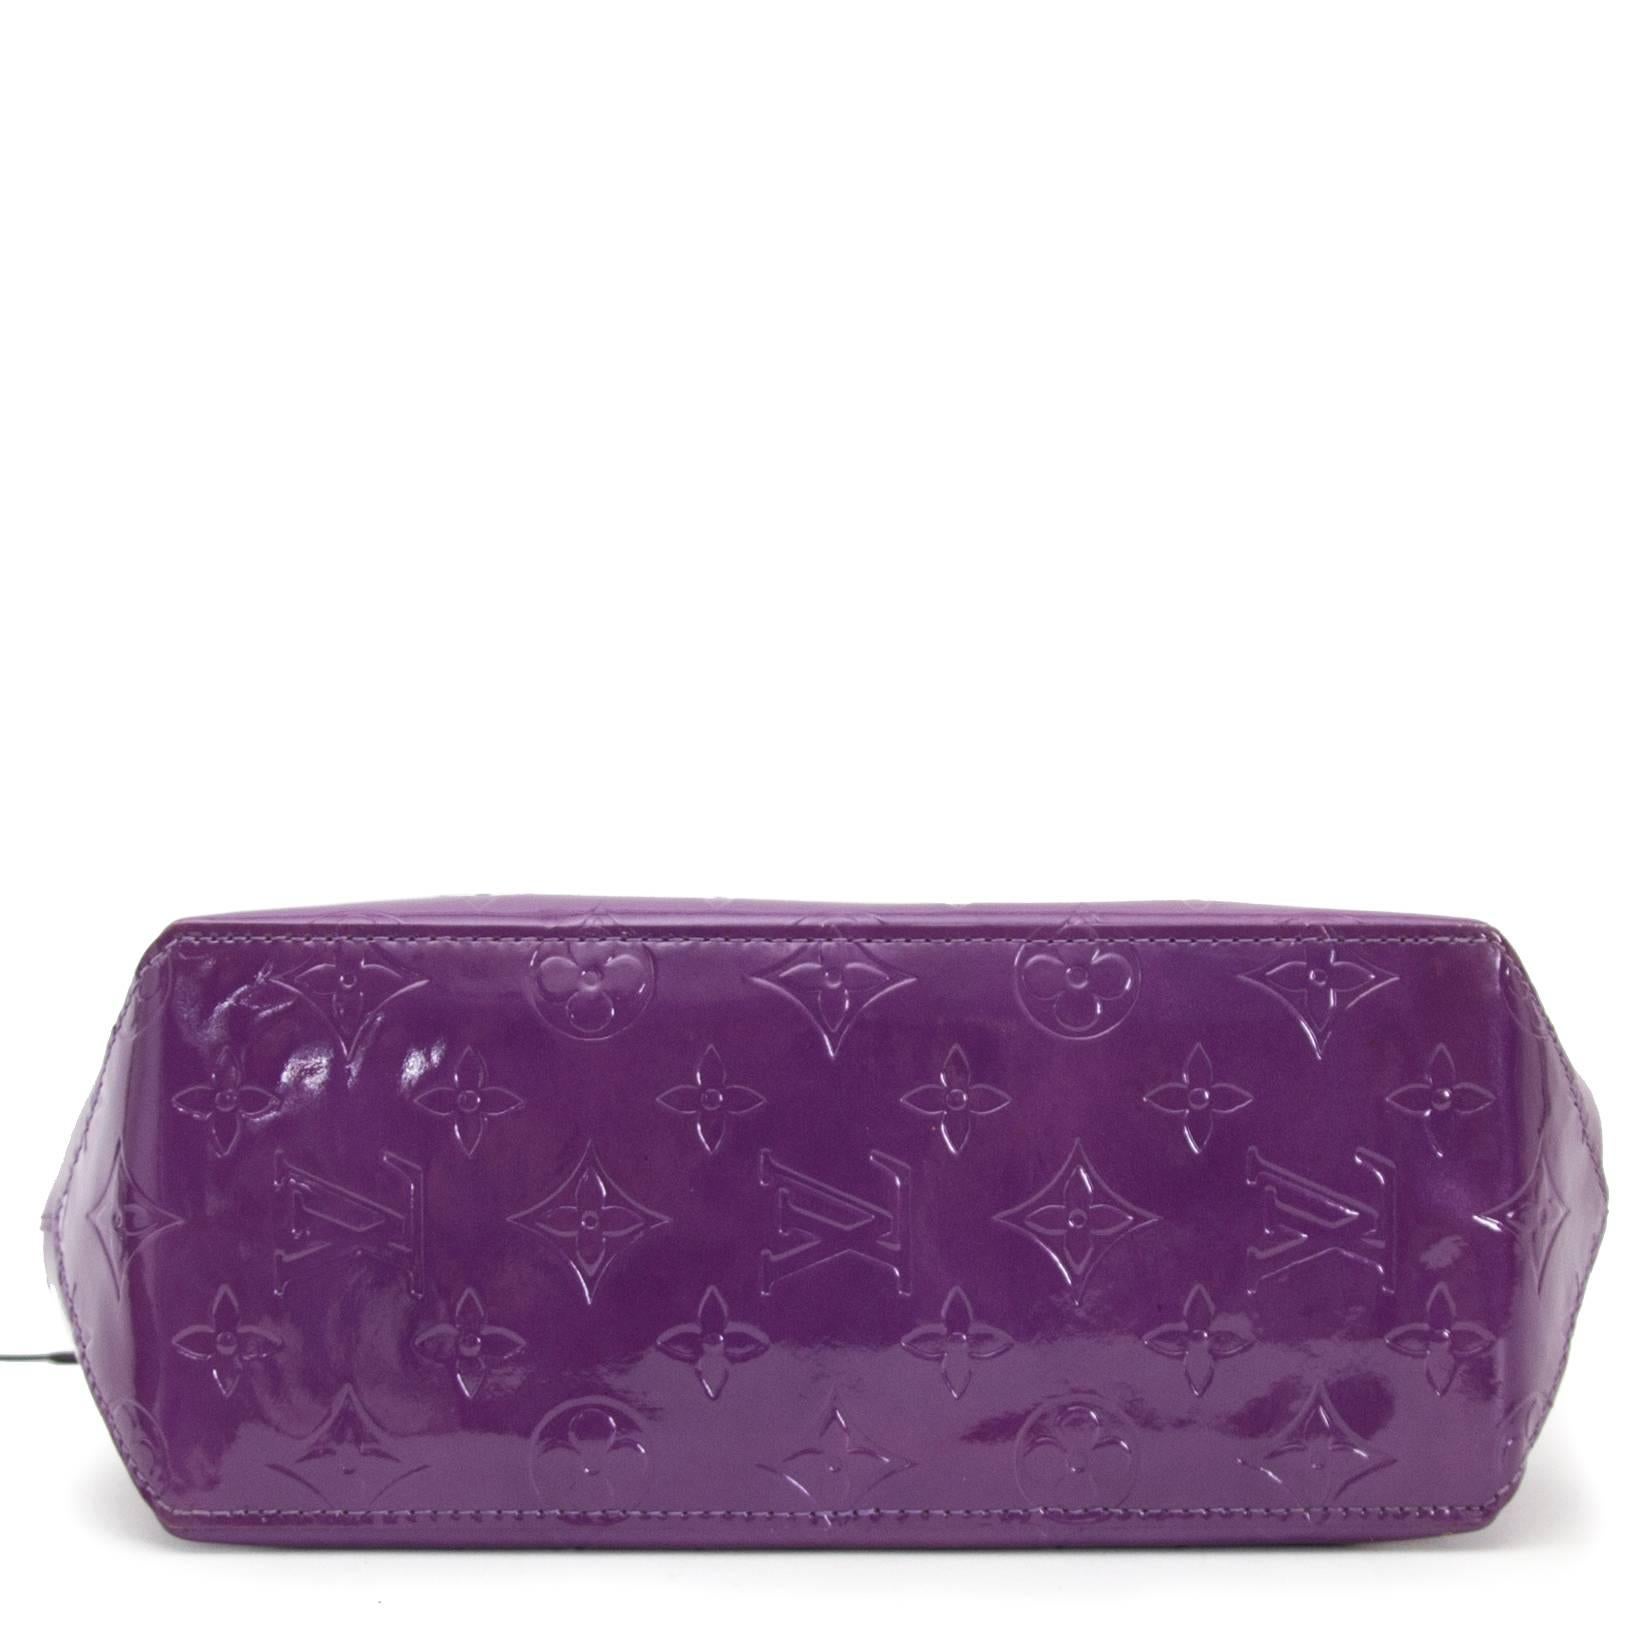 Purple Louis Vuitton Vernis Reade PM Violette Top Handle Bag